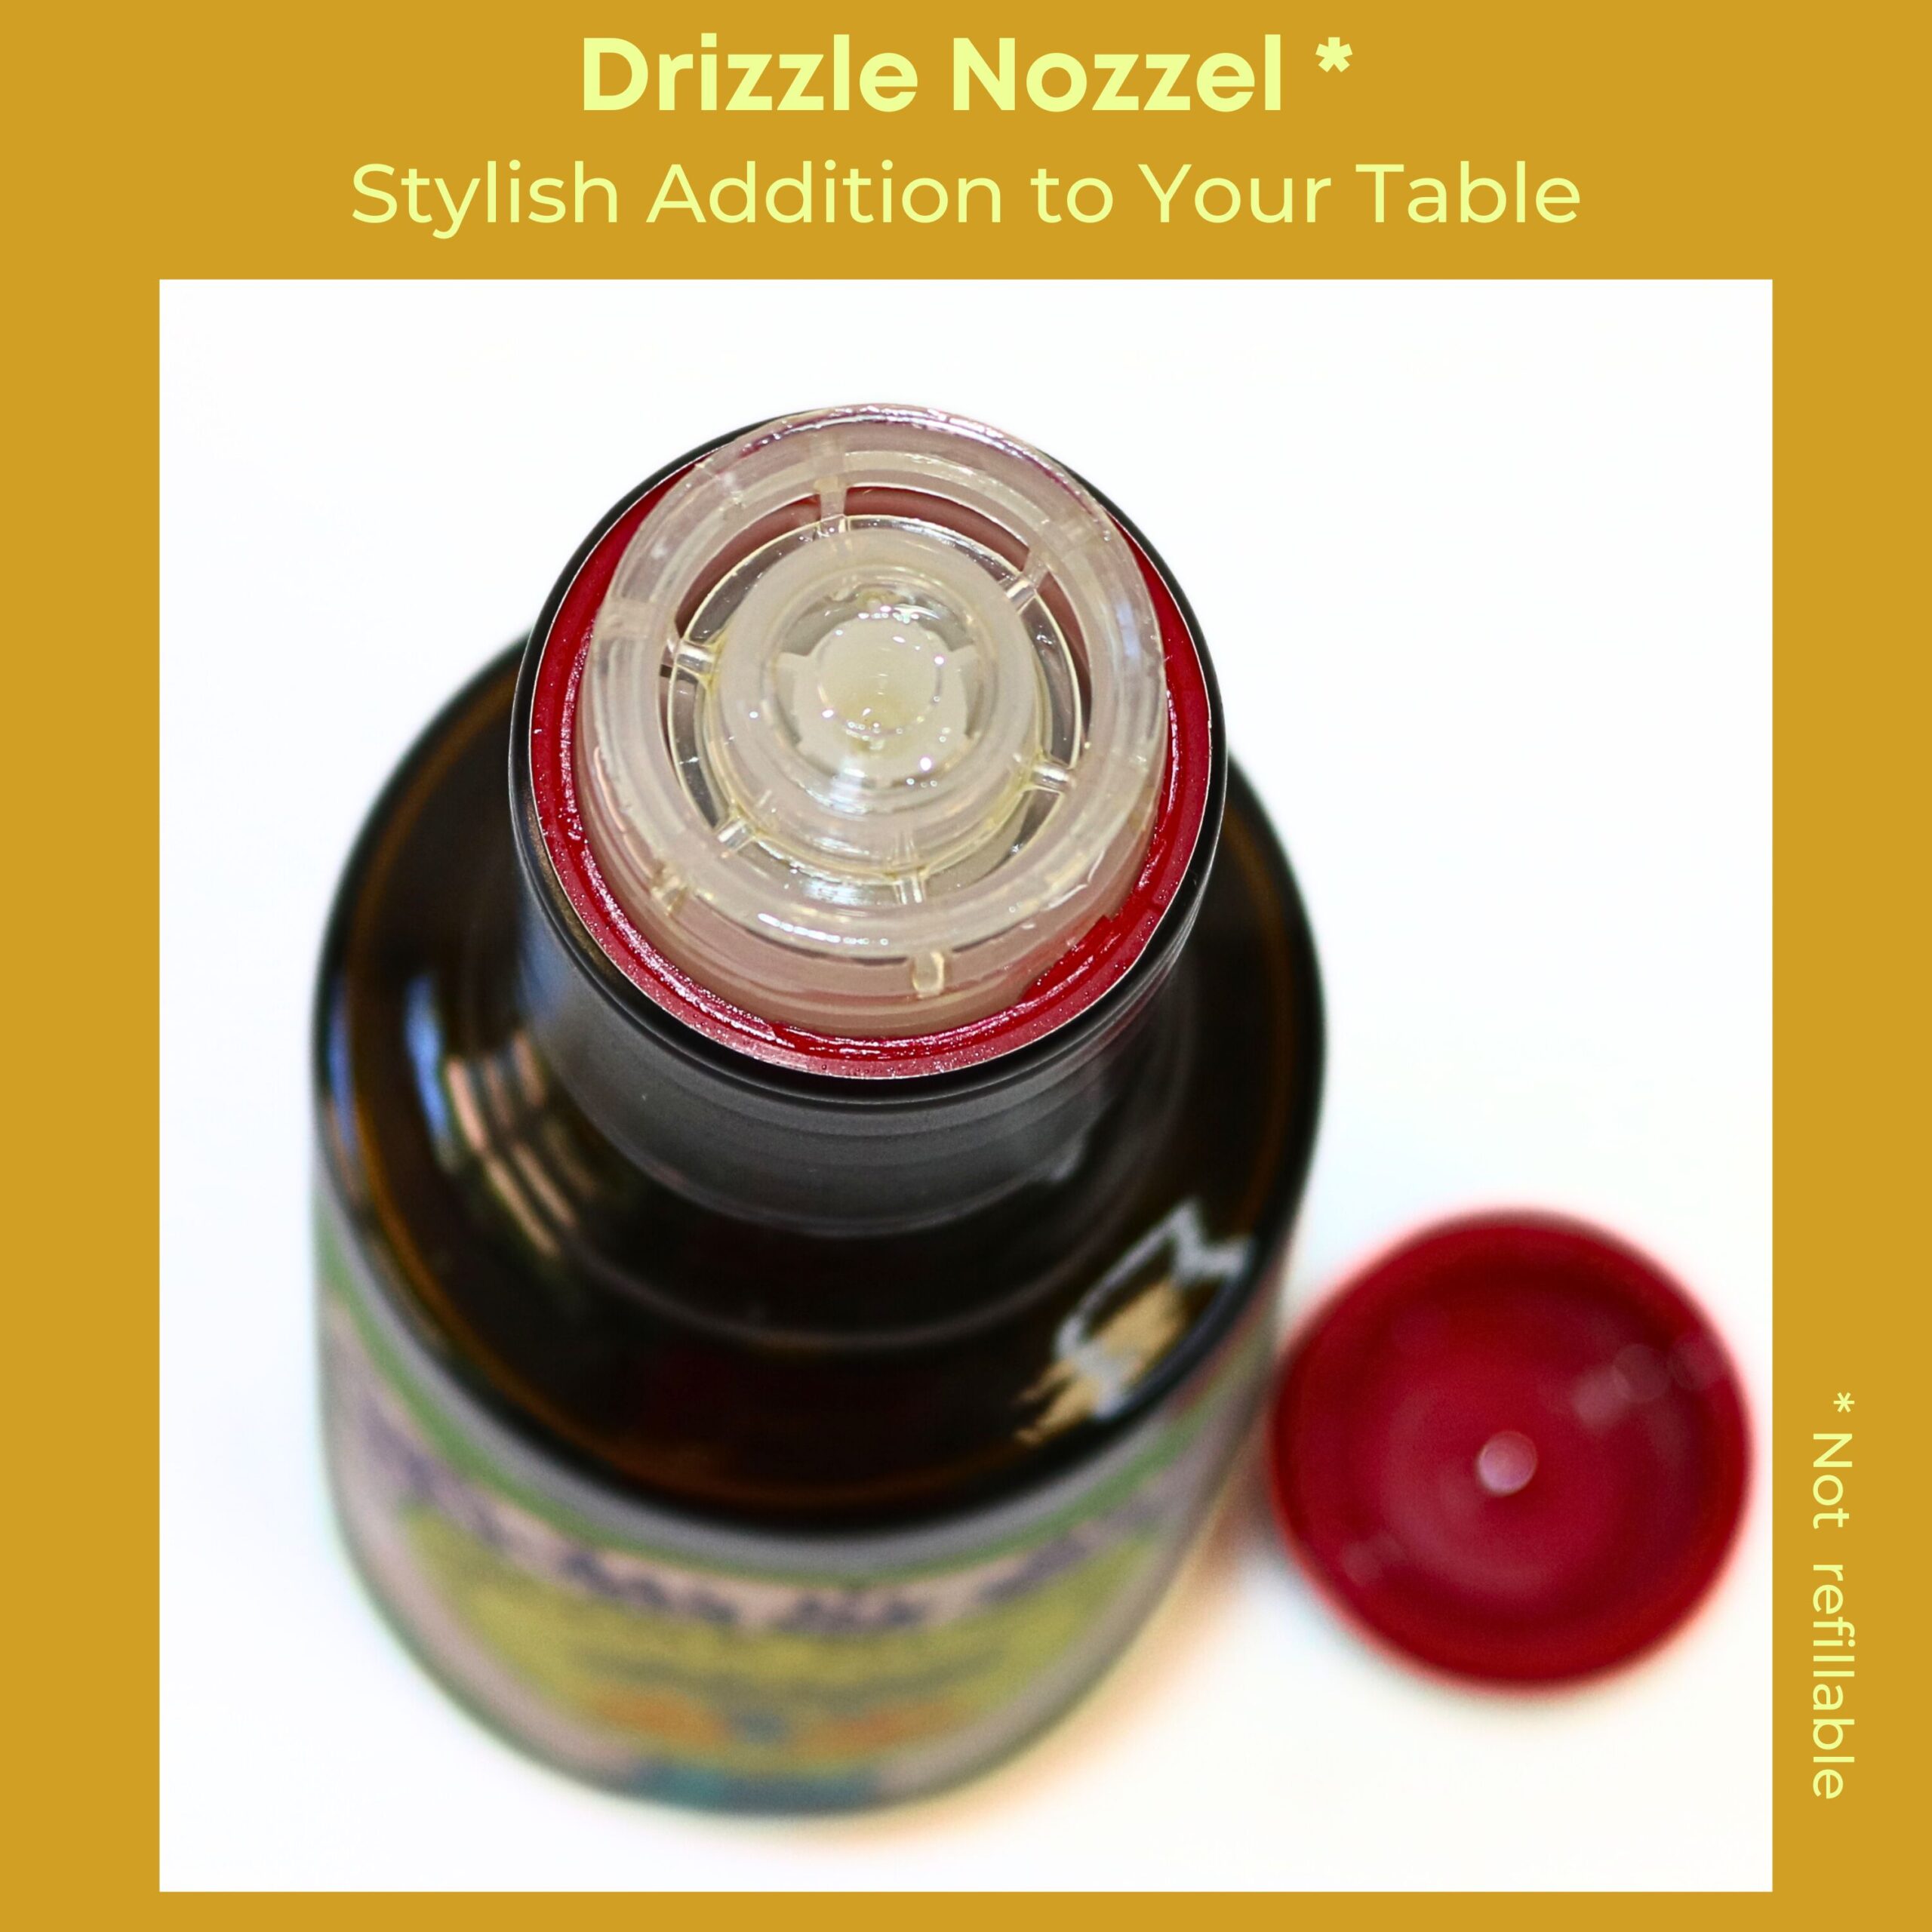 Serriana olive oil - 250ml drizzle nozzle glass bottle